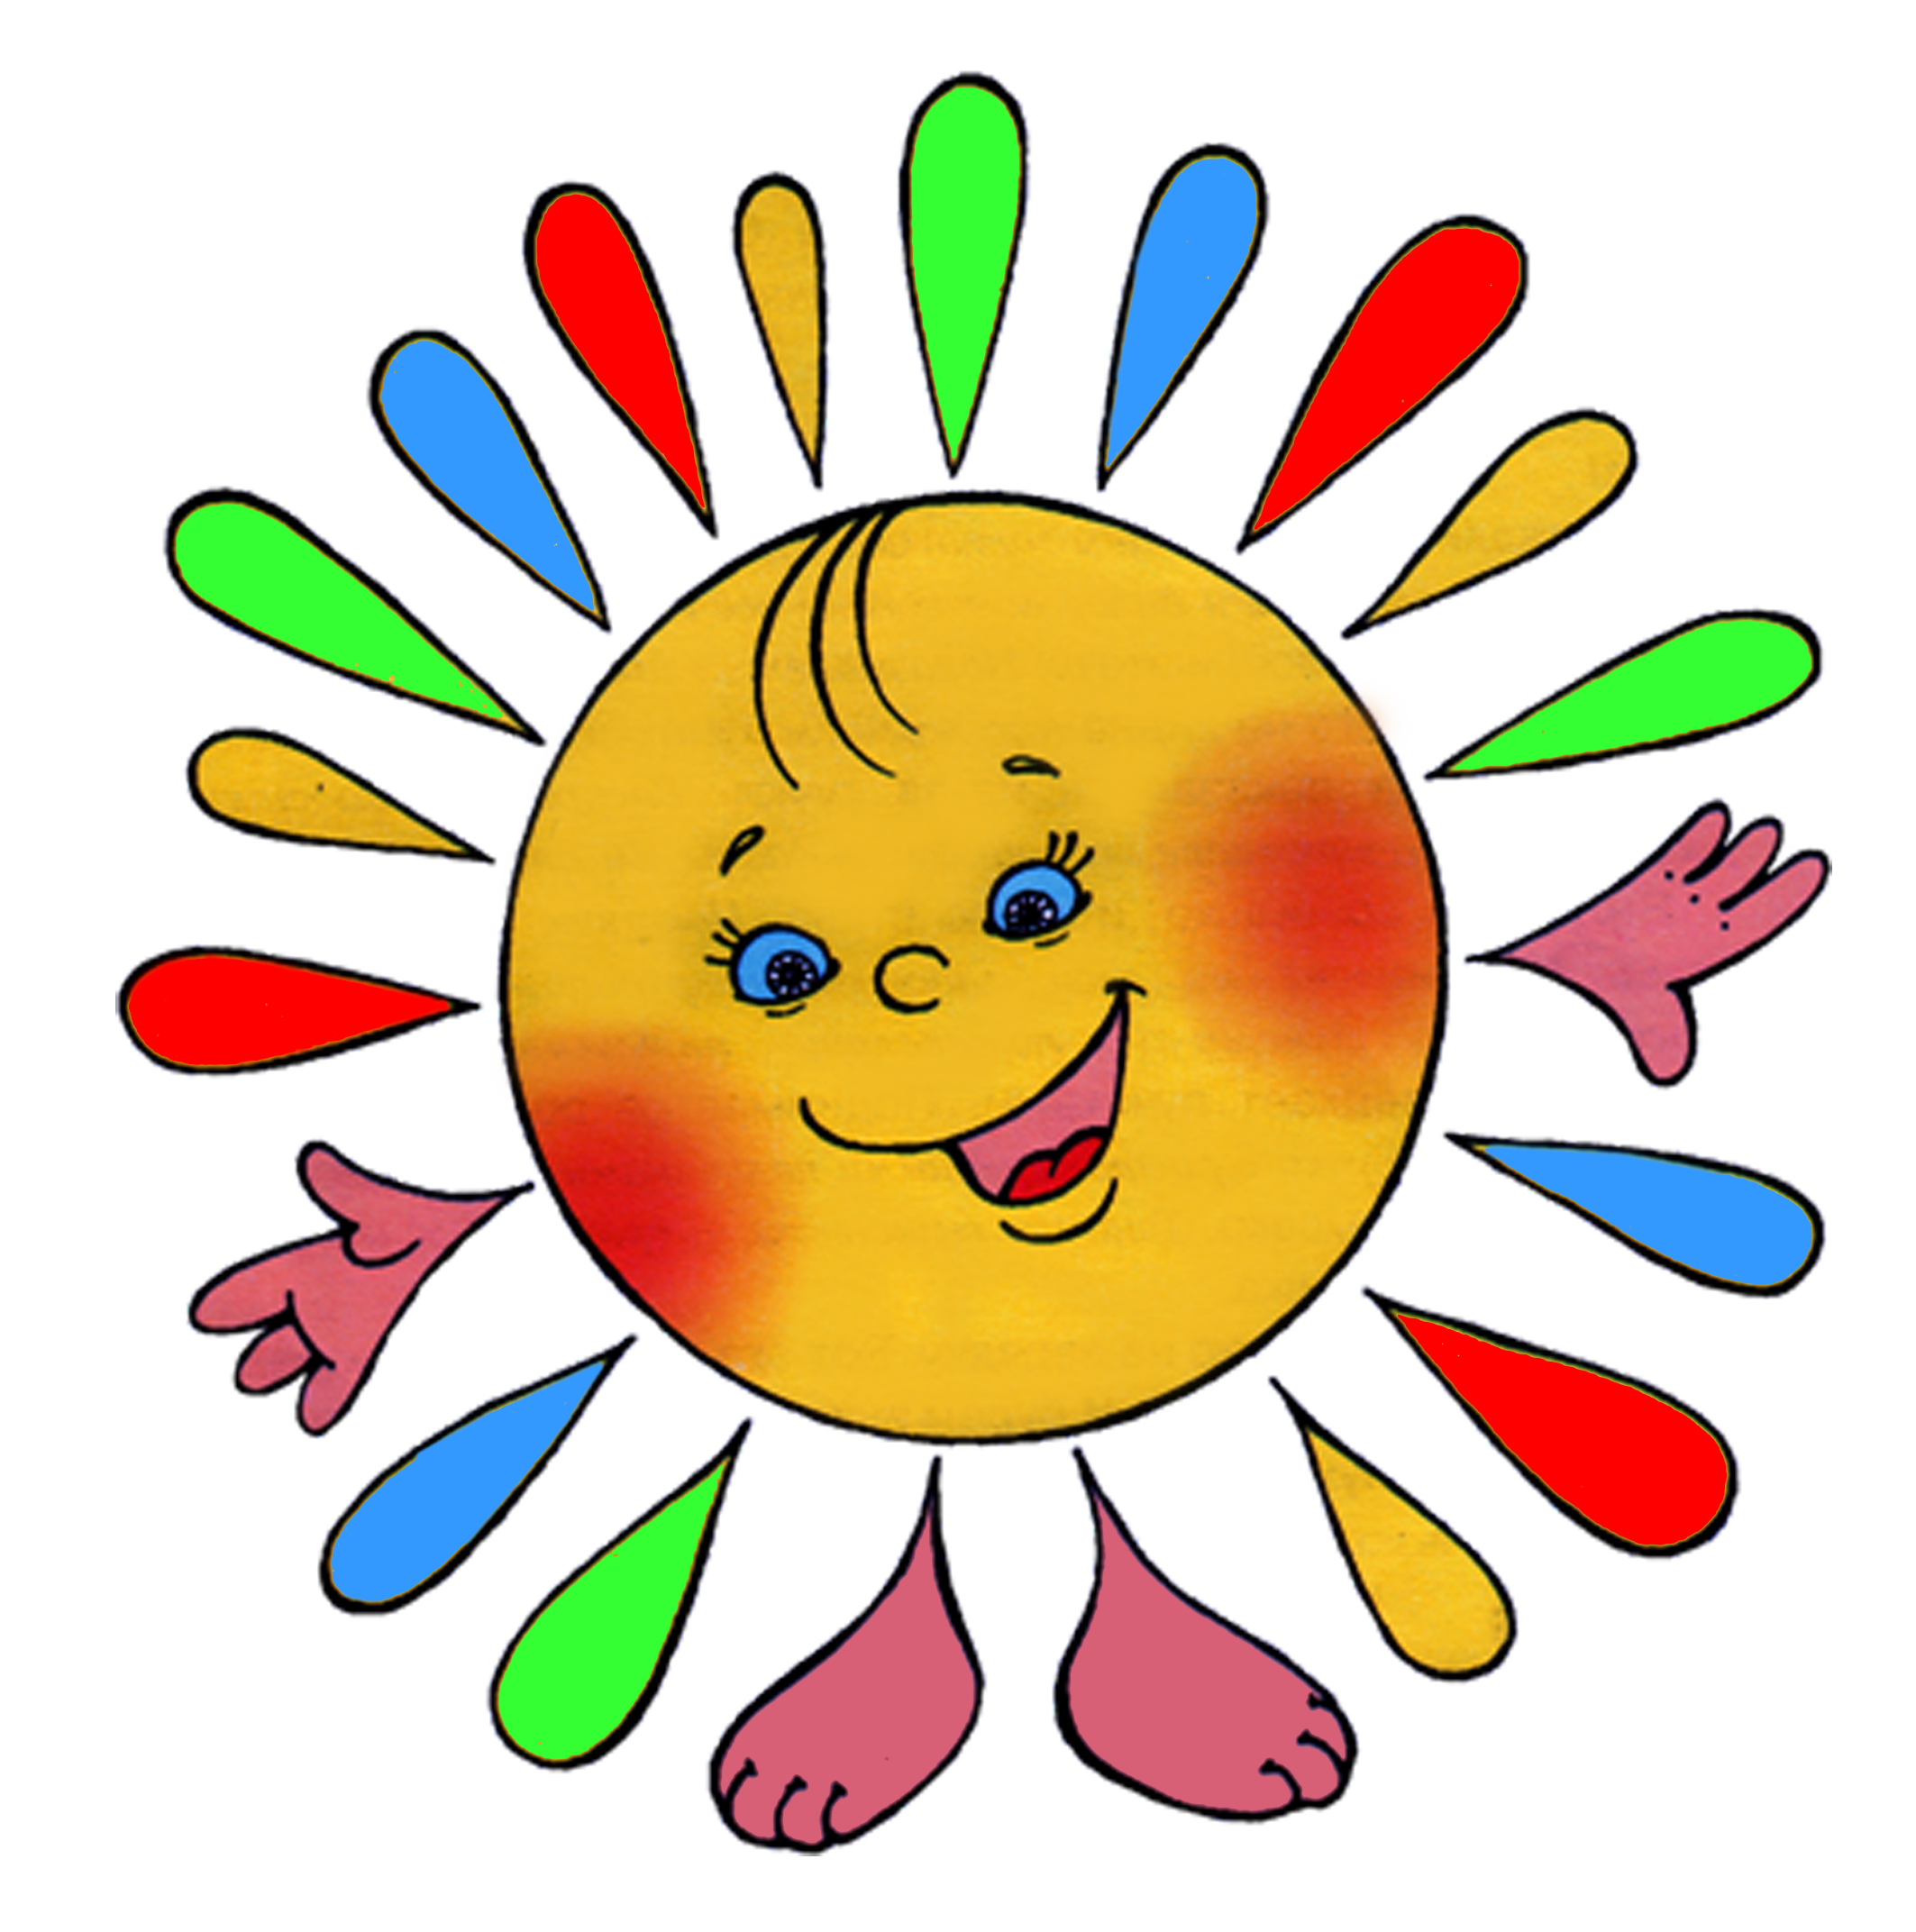 Цветные картинки солнышка. Солнышко рисунок. Солнце картинка для детей. Солнышко картинка для детей. Солнышко рисунок для детей.